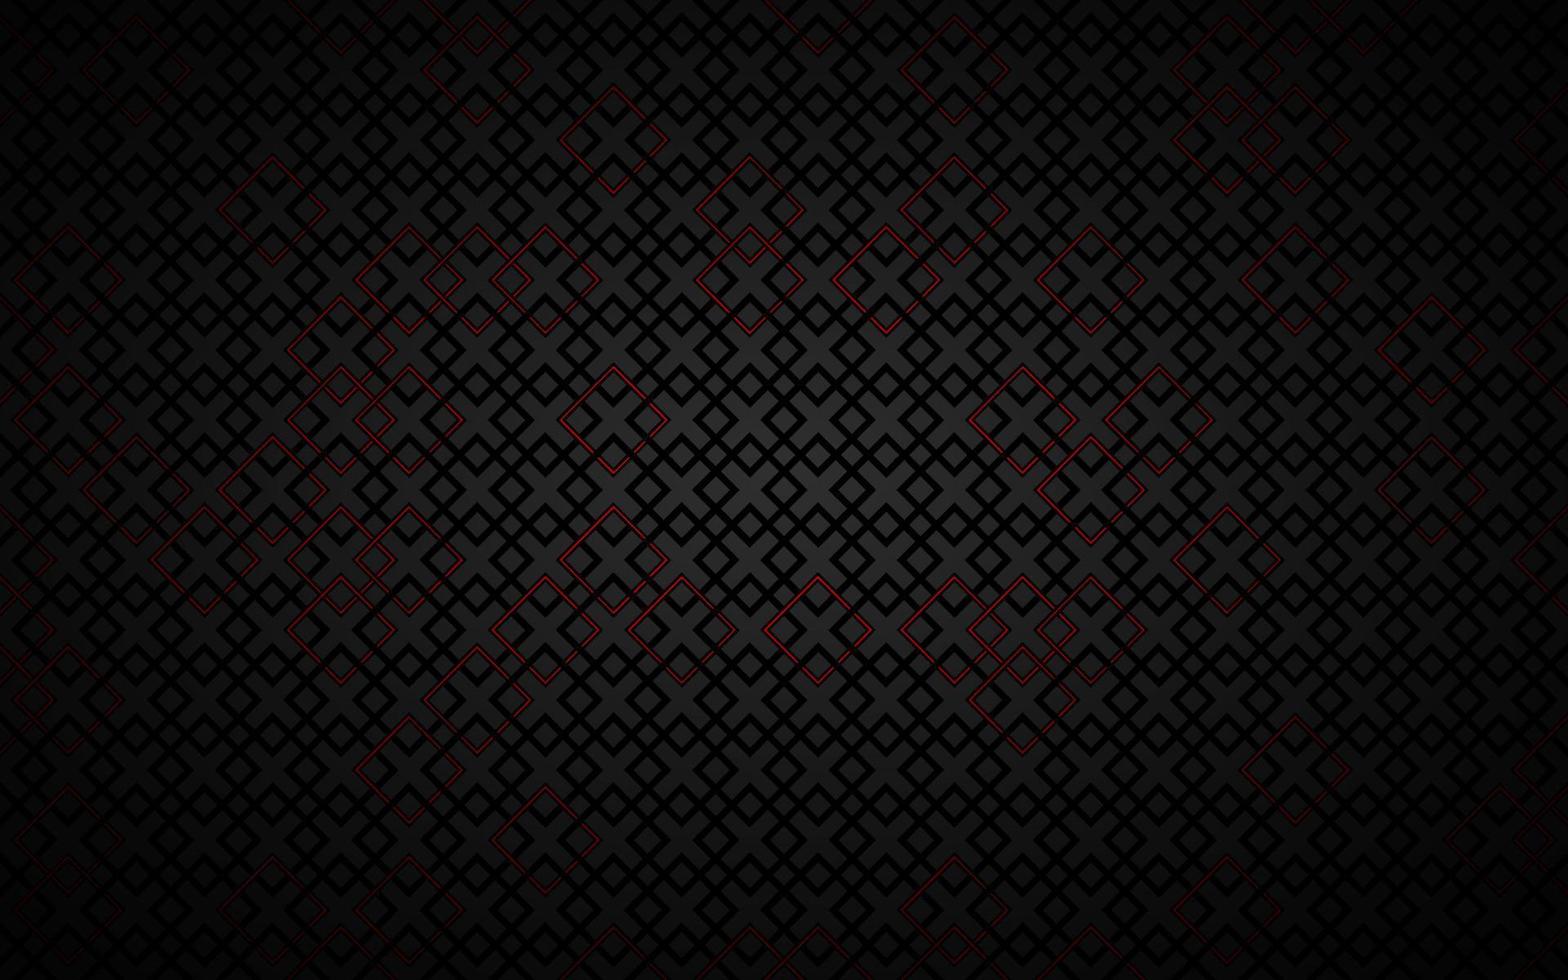 sfondo nero astratto composto da quadrati neri e rossi. design scuro tecnologia moderna. illustrazione vettoriale geometrica. trama a rete metallica